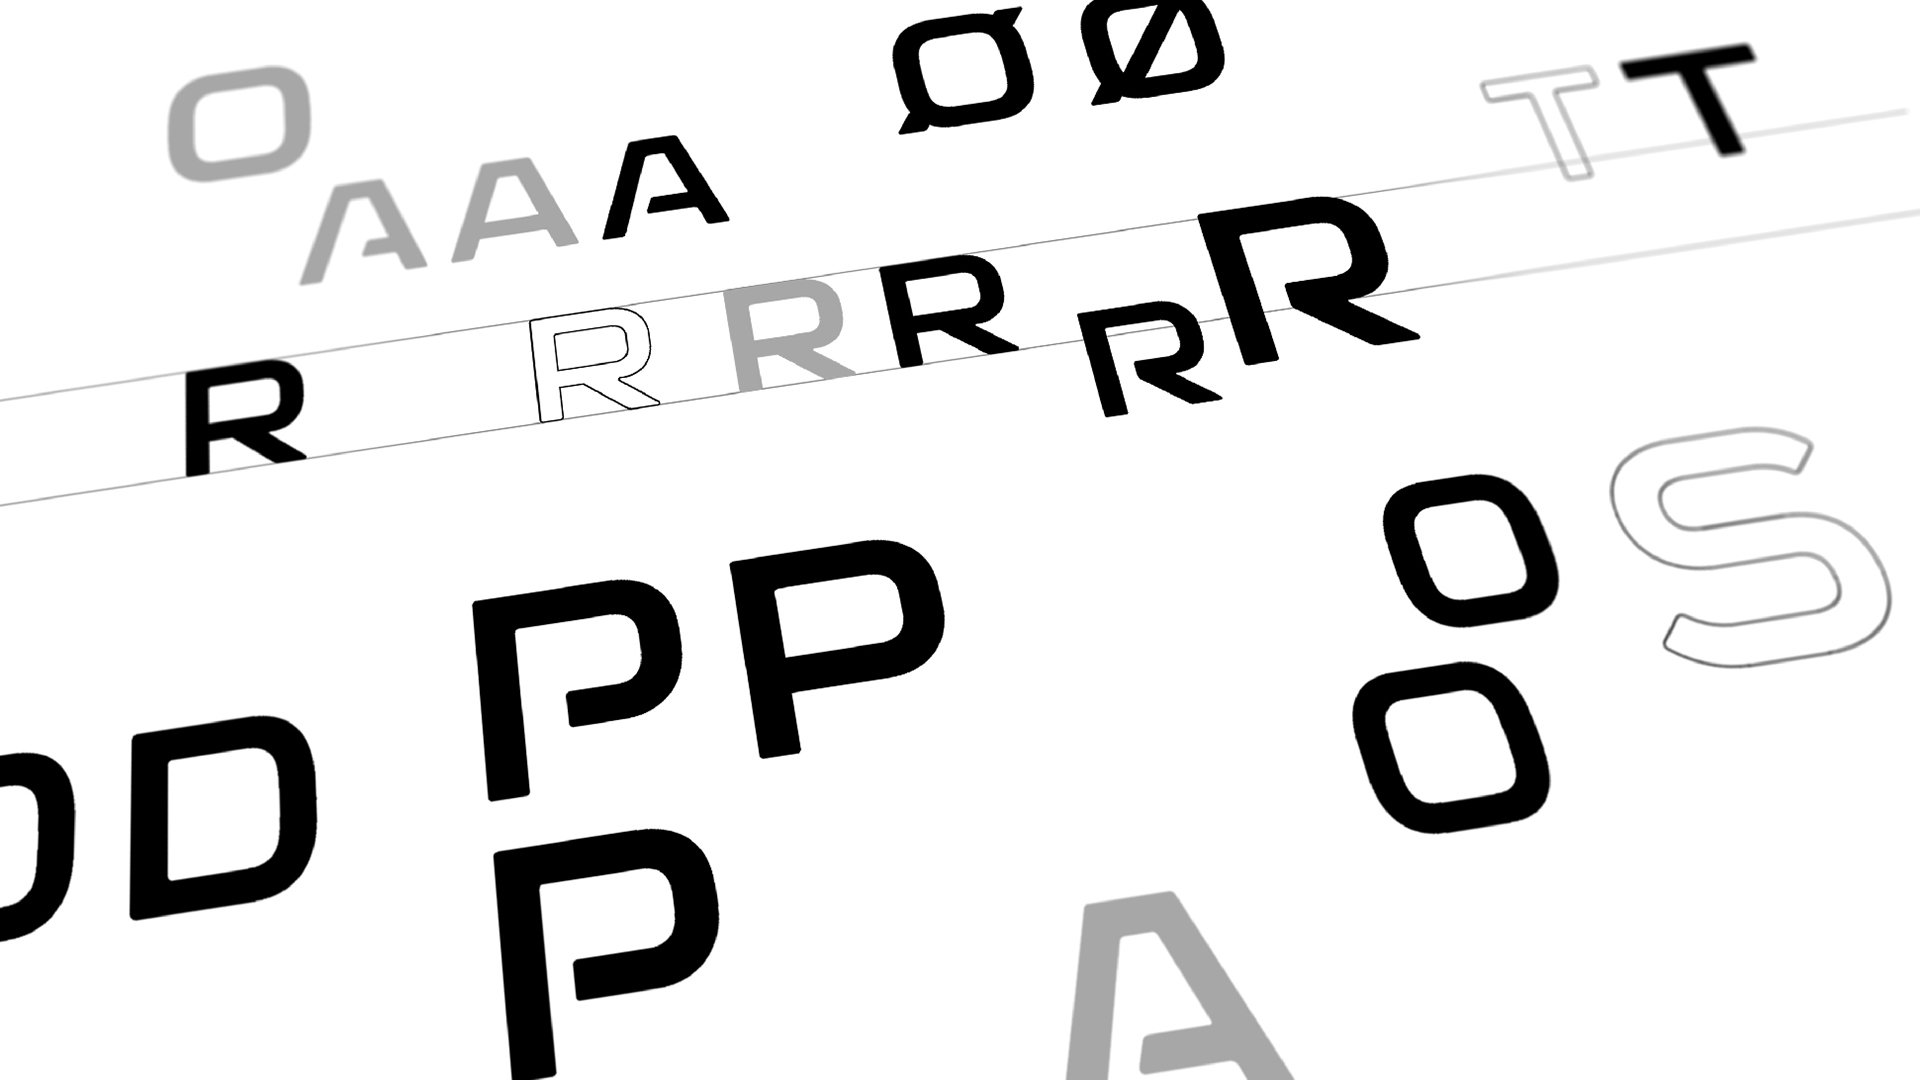 Haldor Topsøe typography guide by LOOP Associates